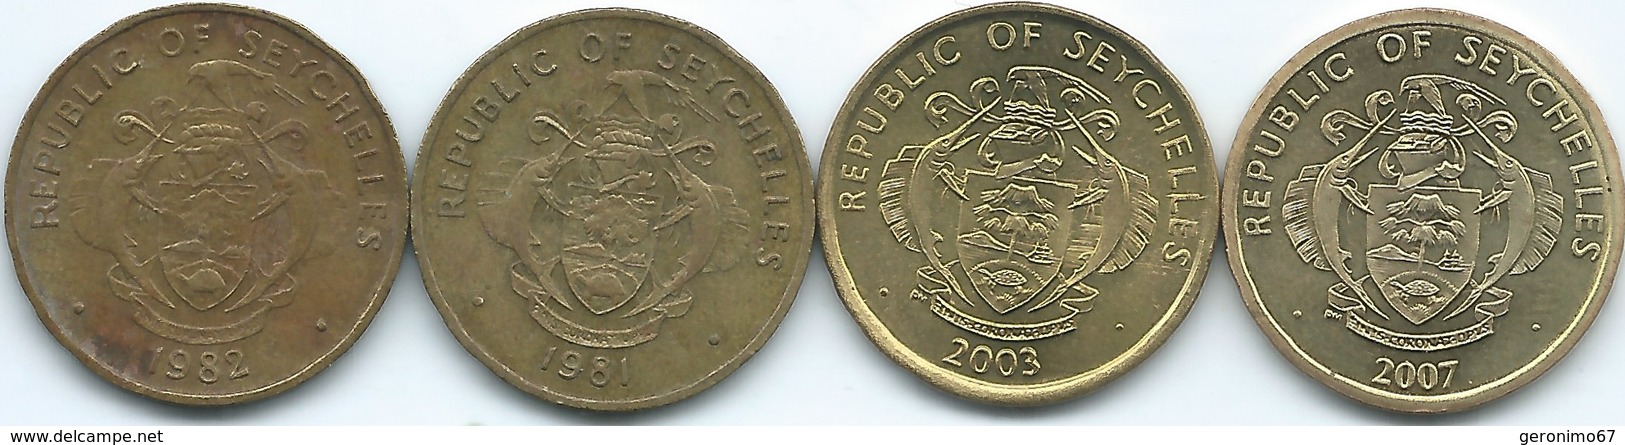 Seychelles - 10 Cents - 1981 (KM44) 1982 (KM48.1) 2007 (KM48.2) 2007 (magnetic - KM48a) - Seychelles